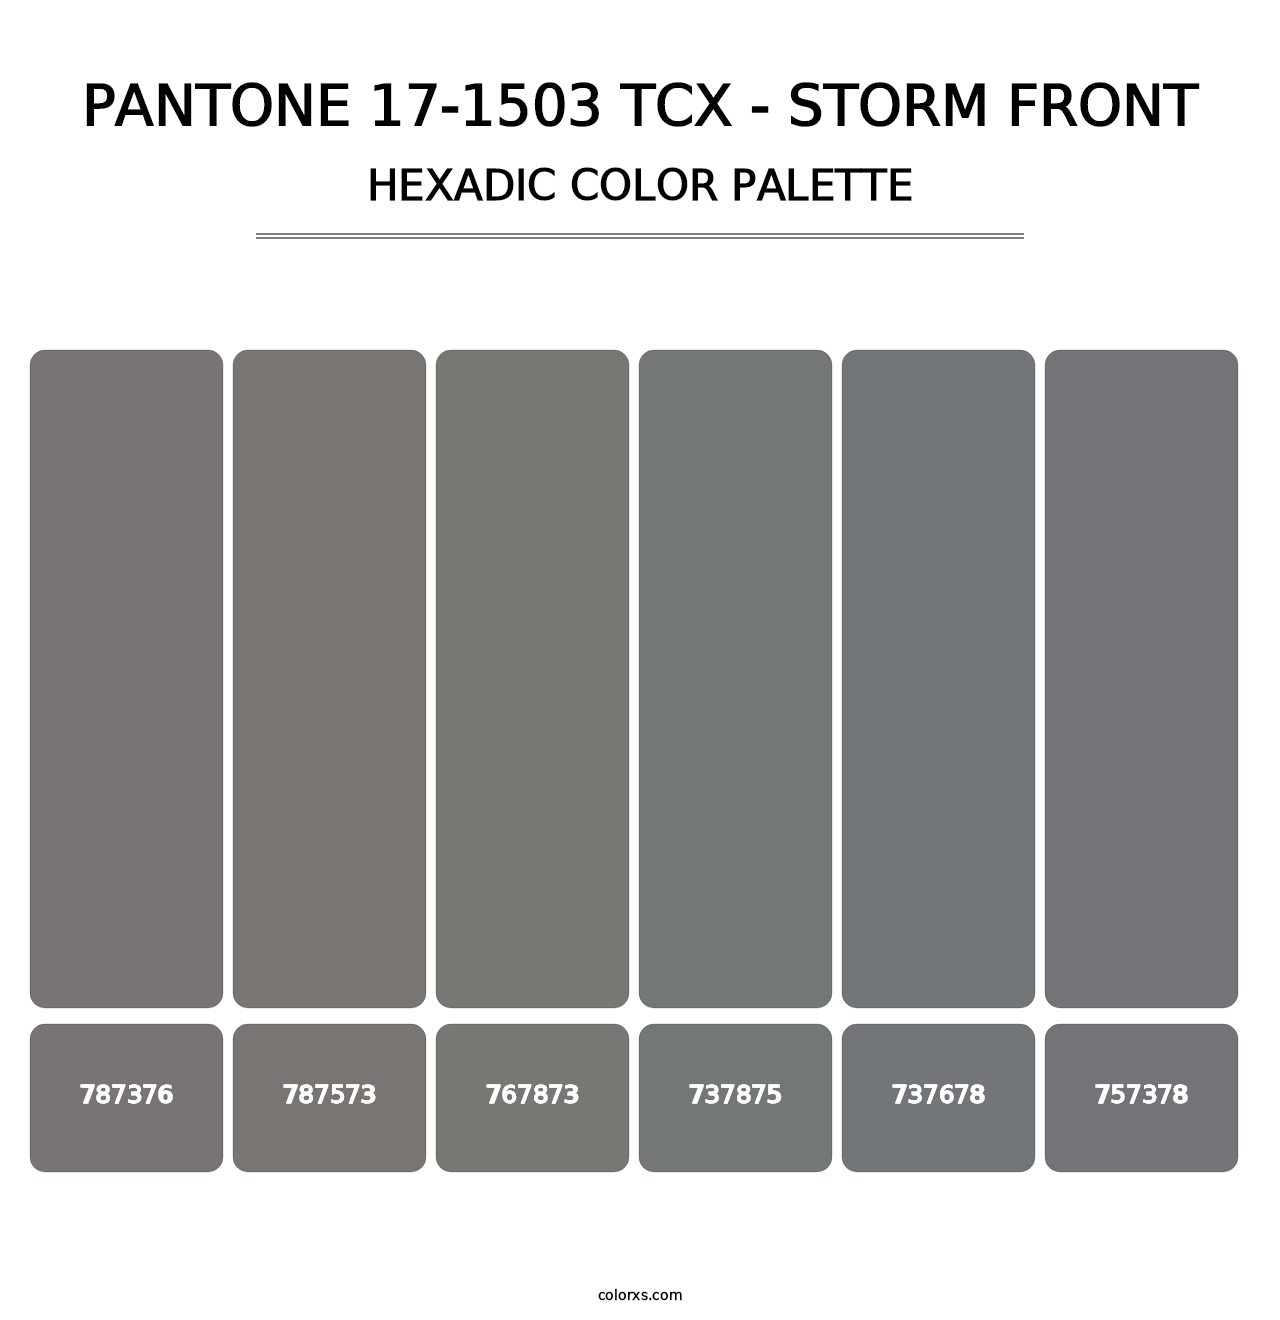 PANTONE 17-1503 TCX - Storm Front - Hexadic Color Palette